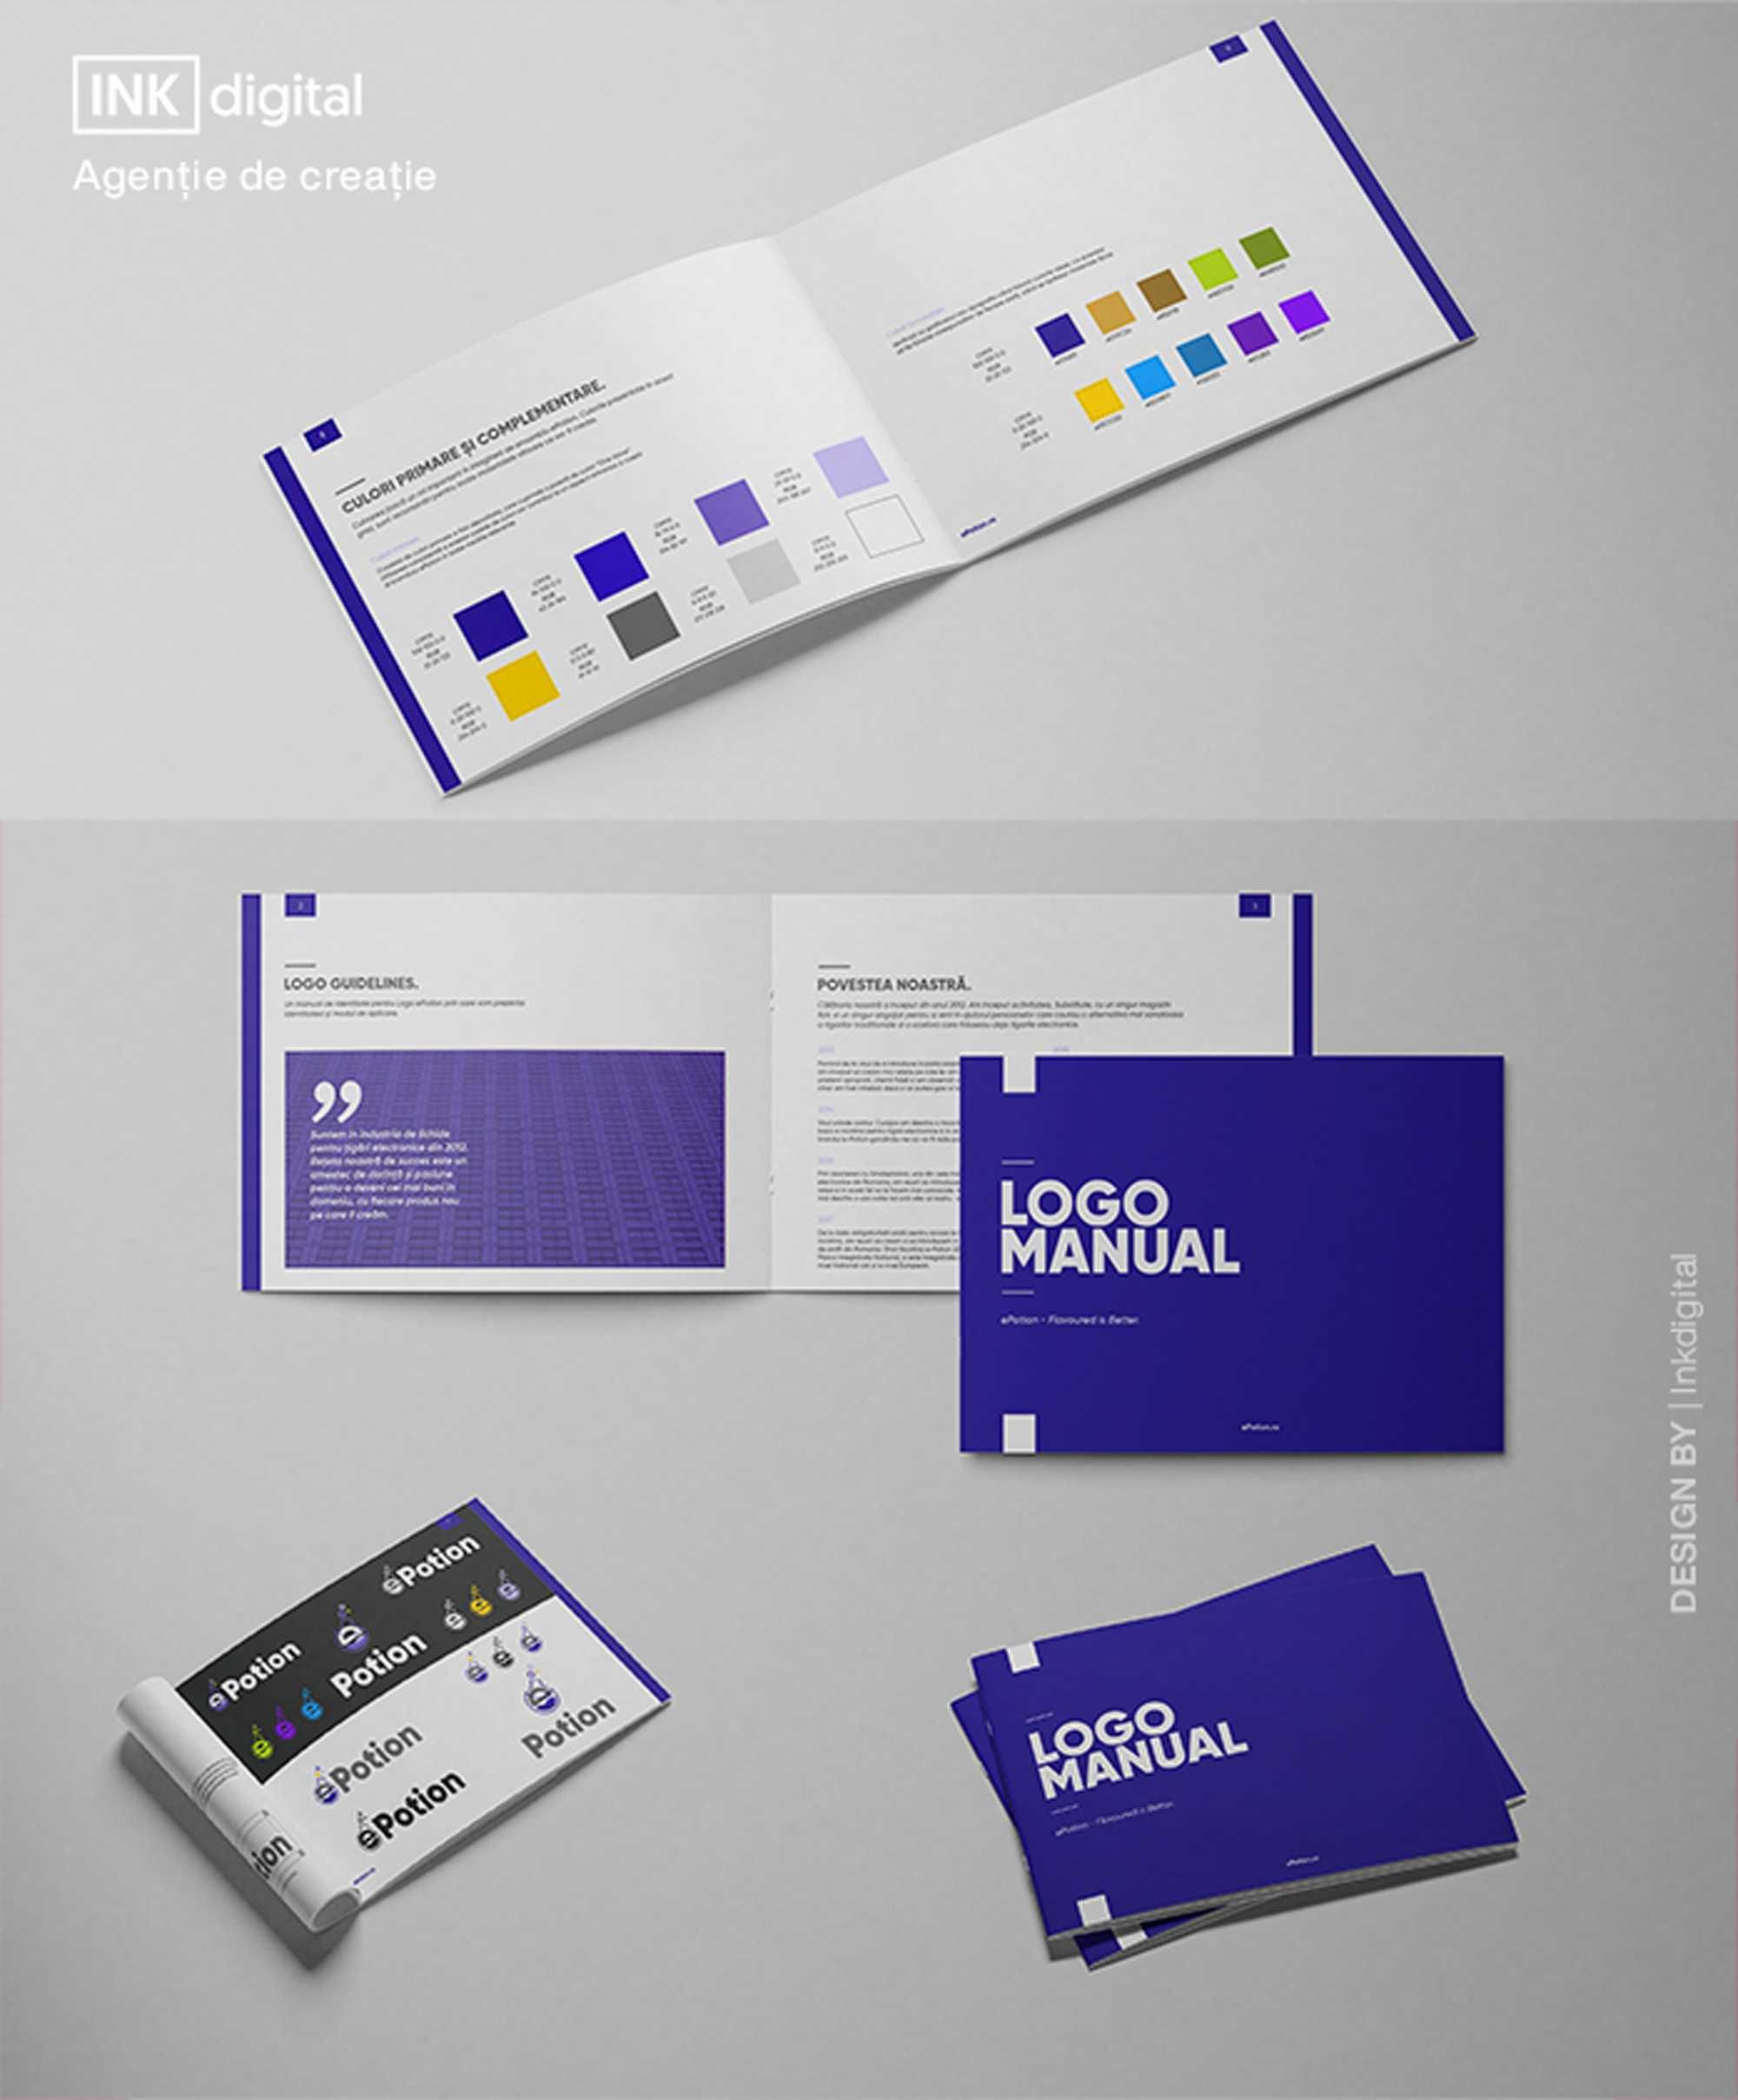 Inkdigital - Agentie - Consultanta Brand si Design.